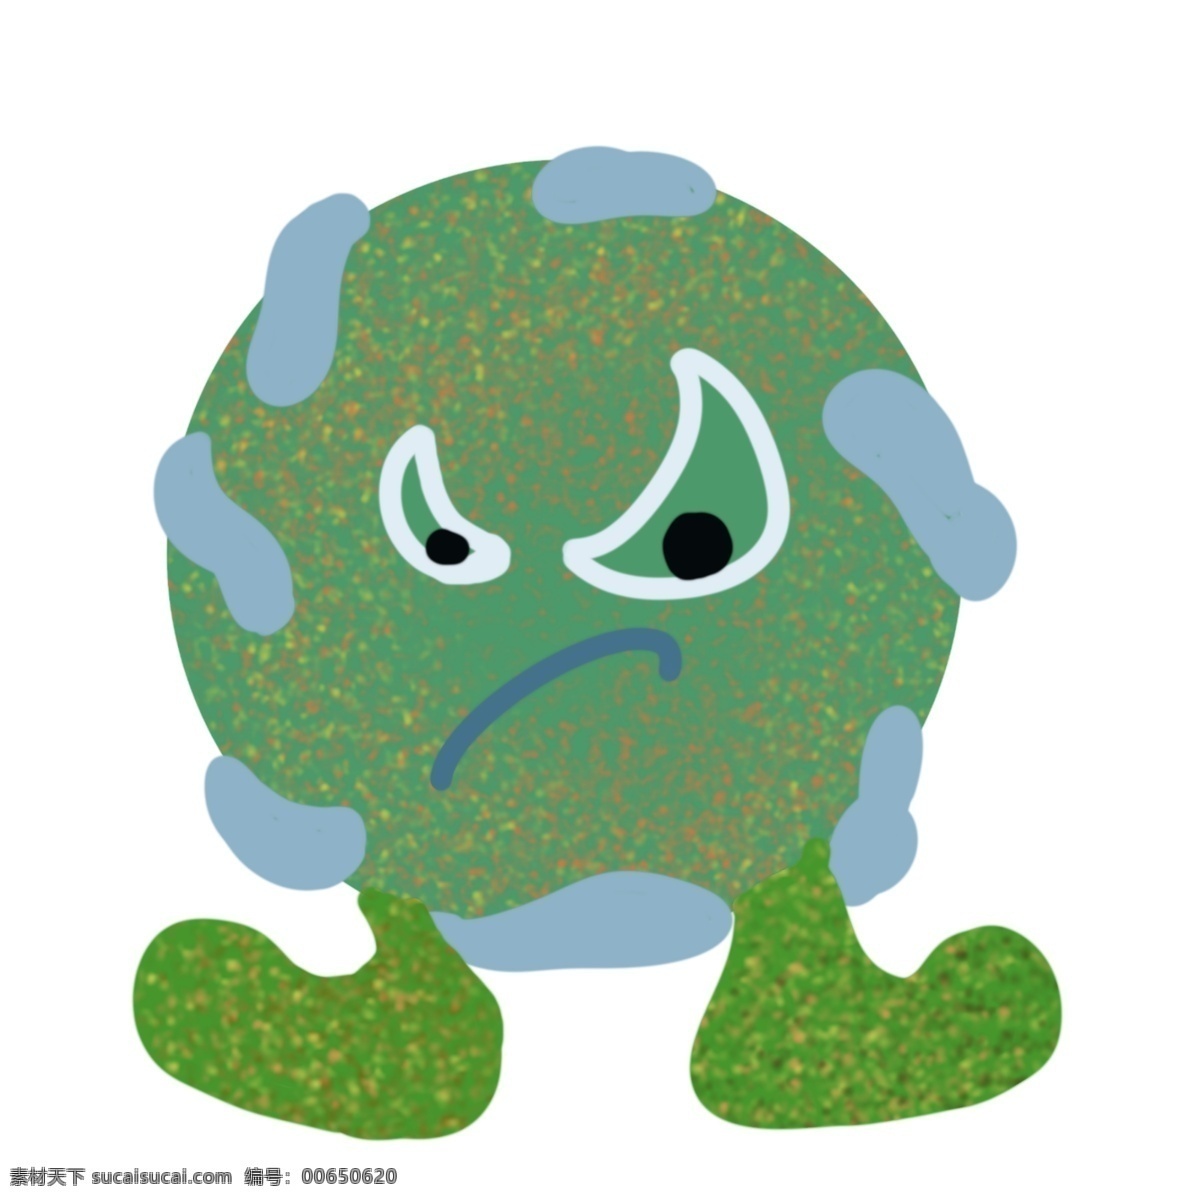 鬼脸 有害 细菌 插画 做鬼脸的细菌 卡通插画 细菌插画 病菌插画 传染细菌 有害病菌 绿色的细菌